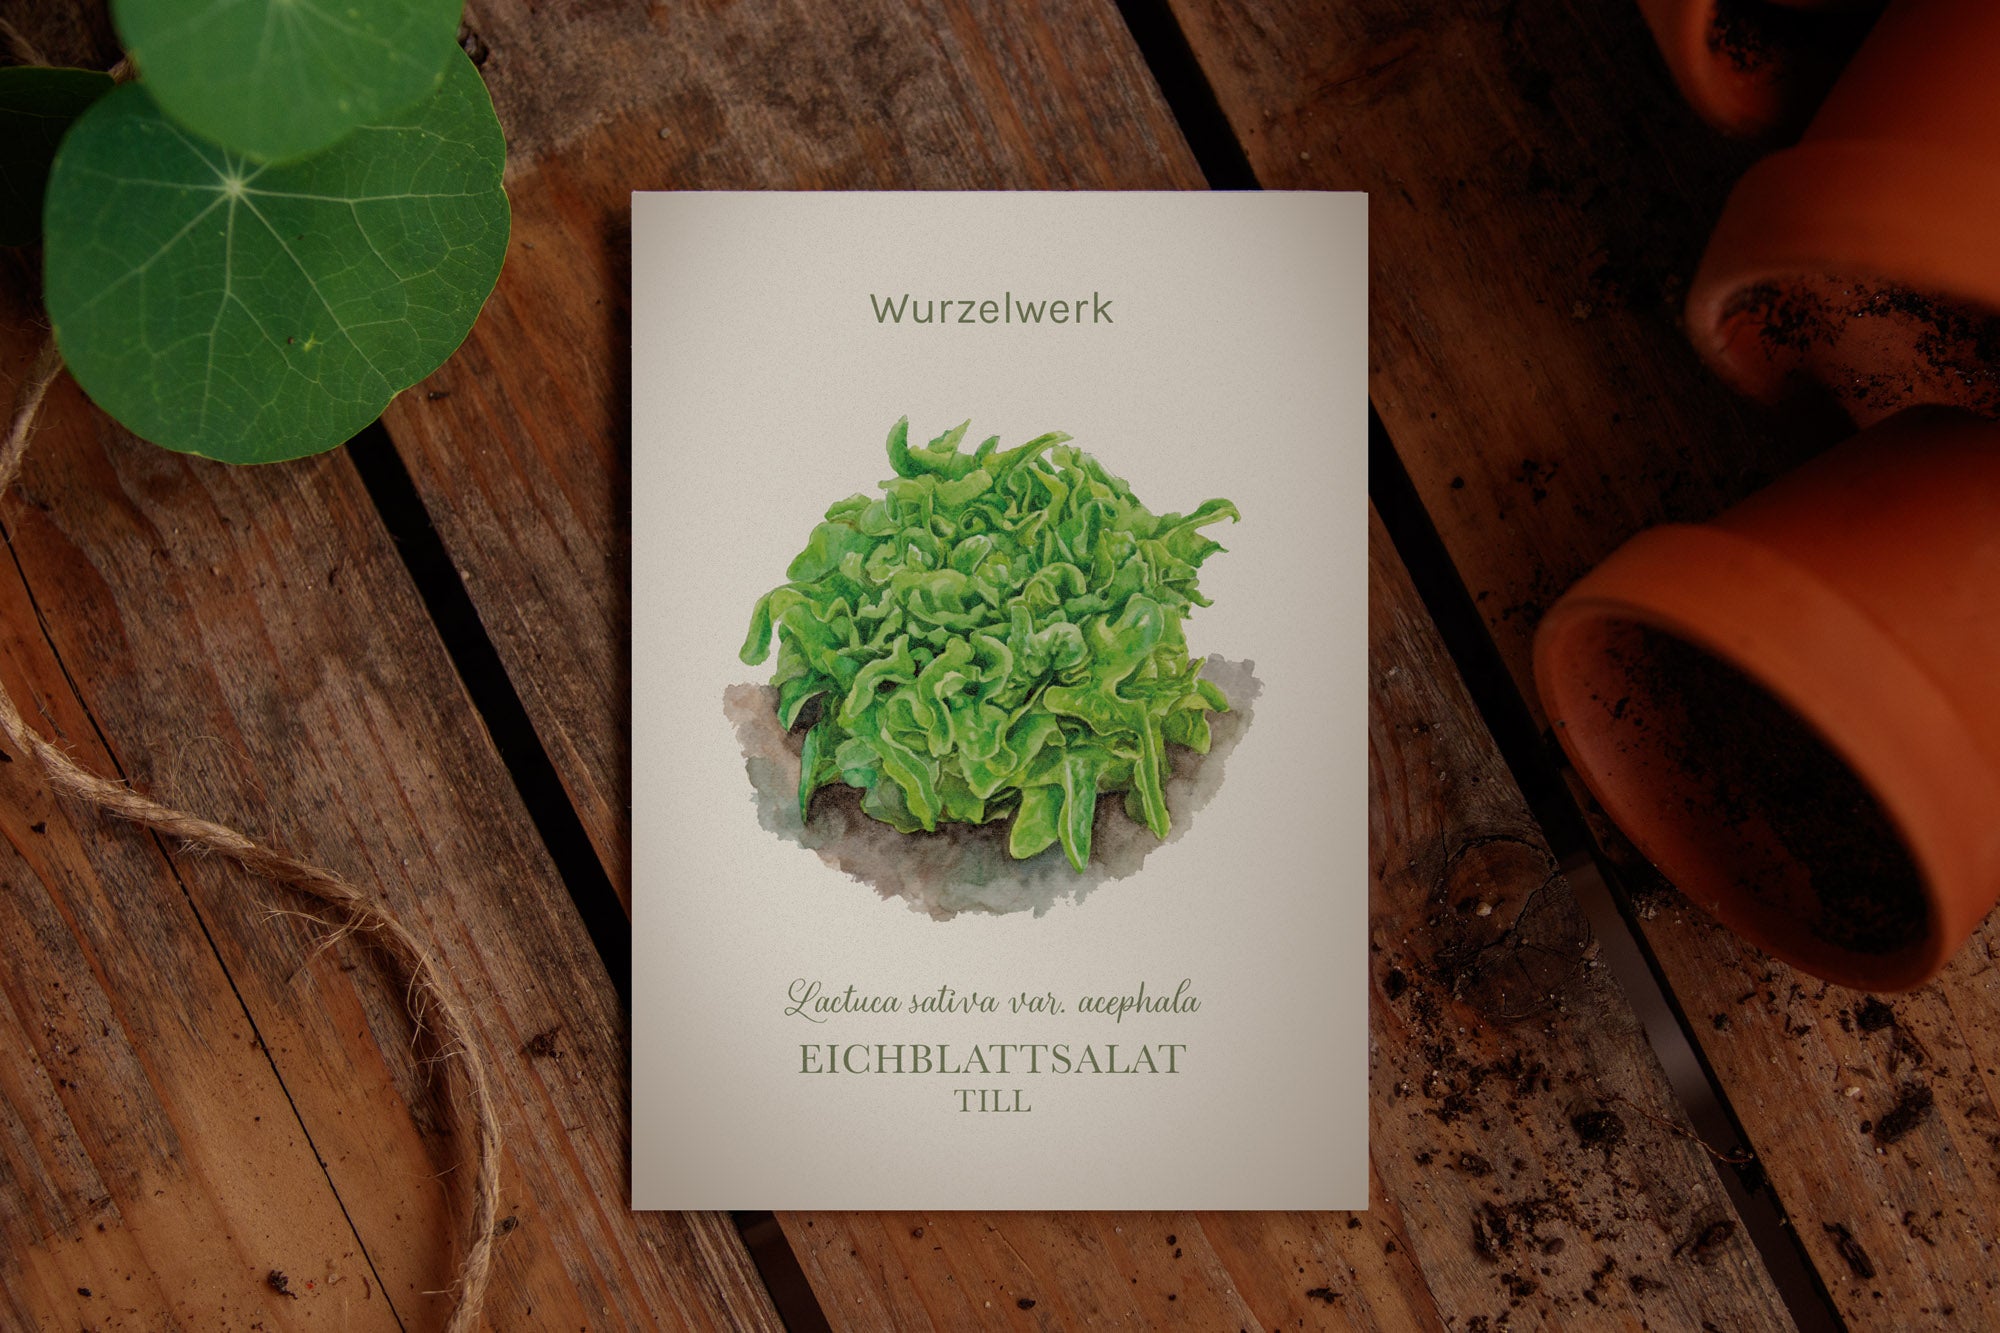 Eichblattsalat ‘Till’